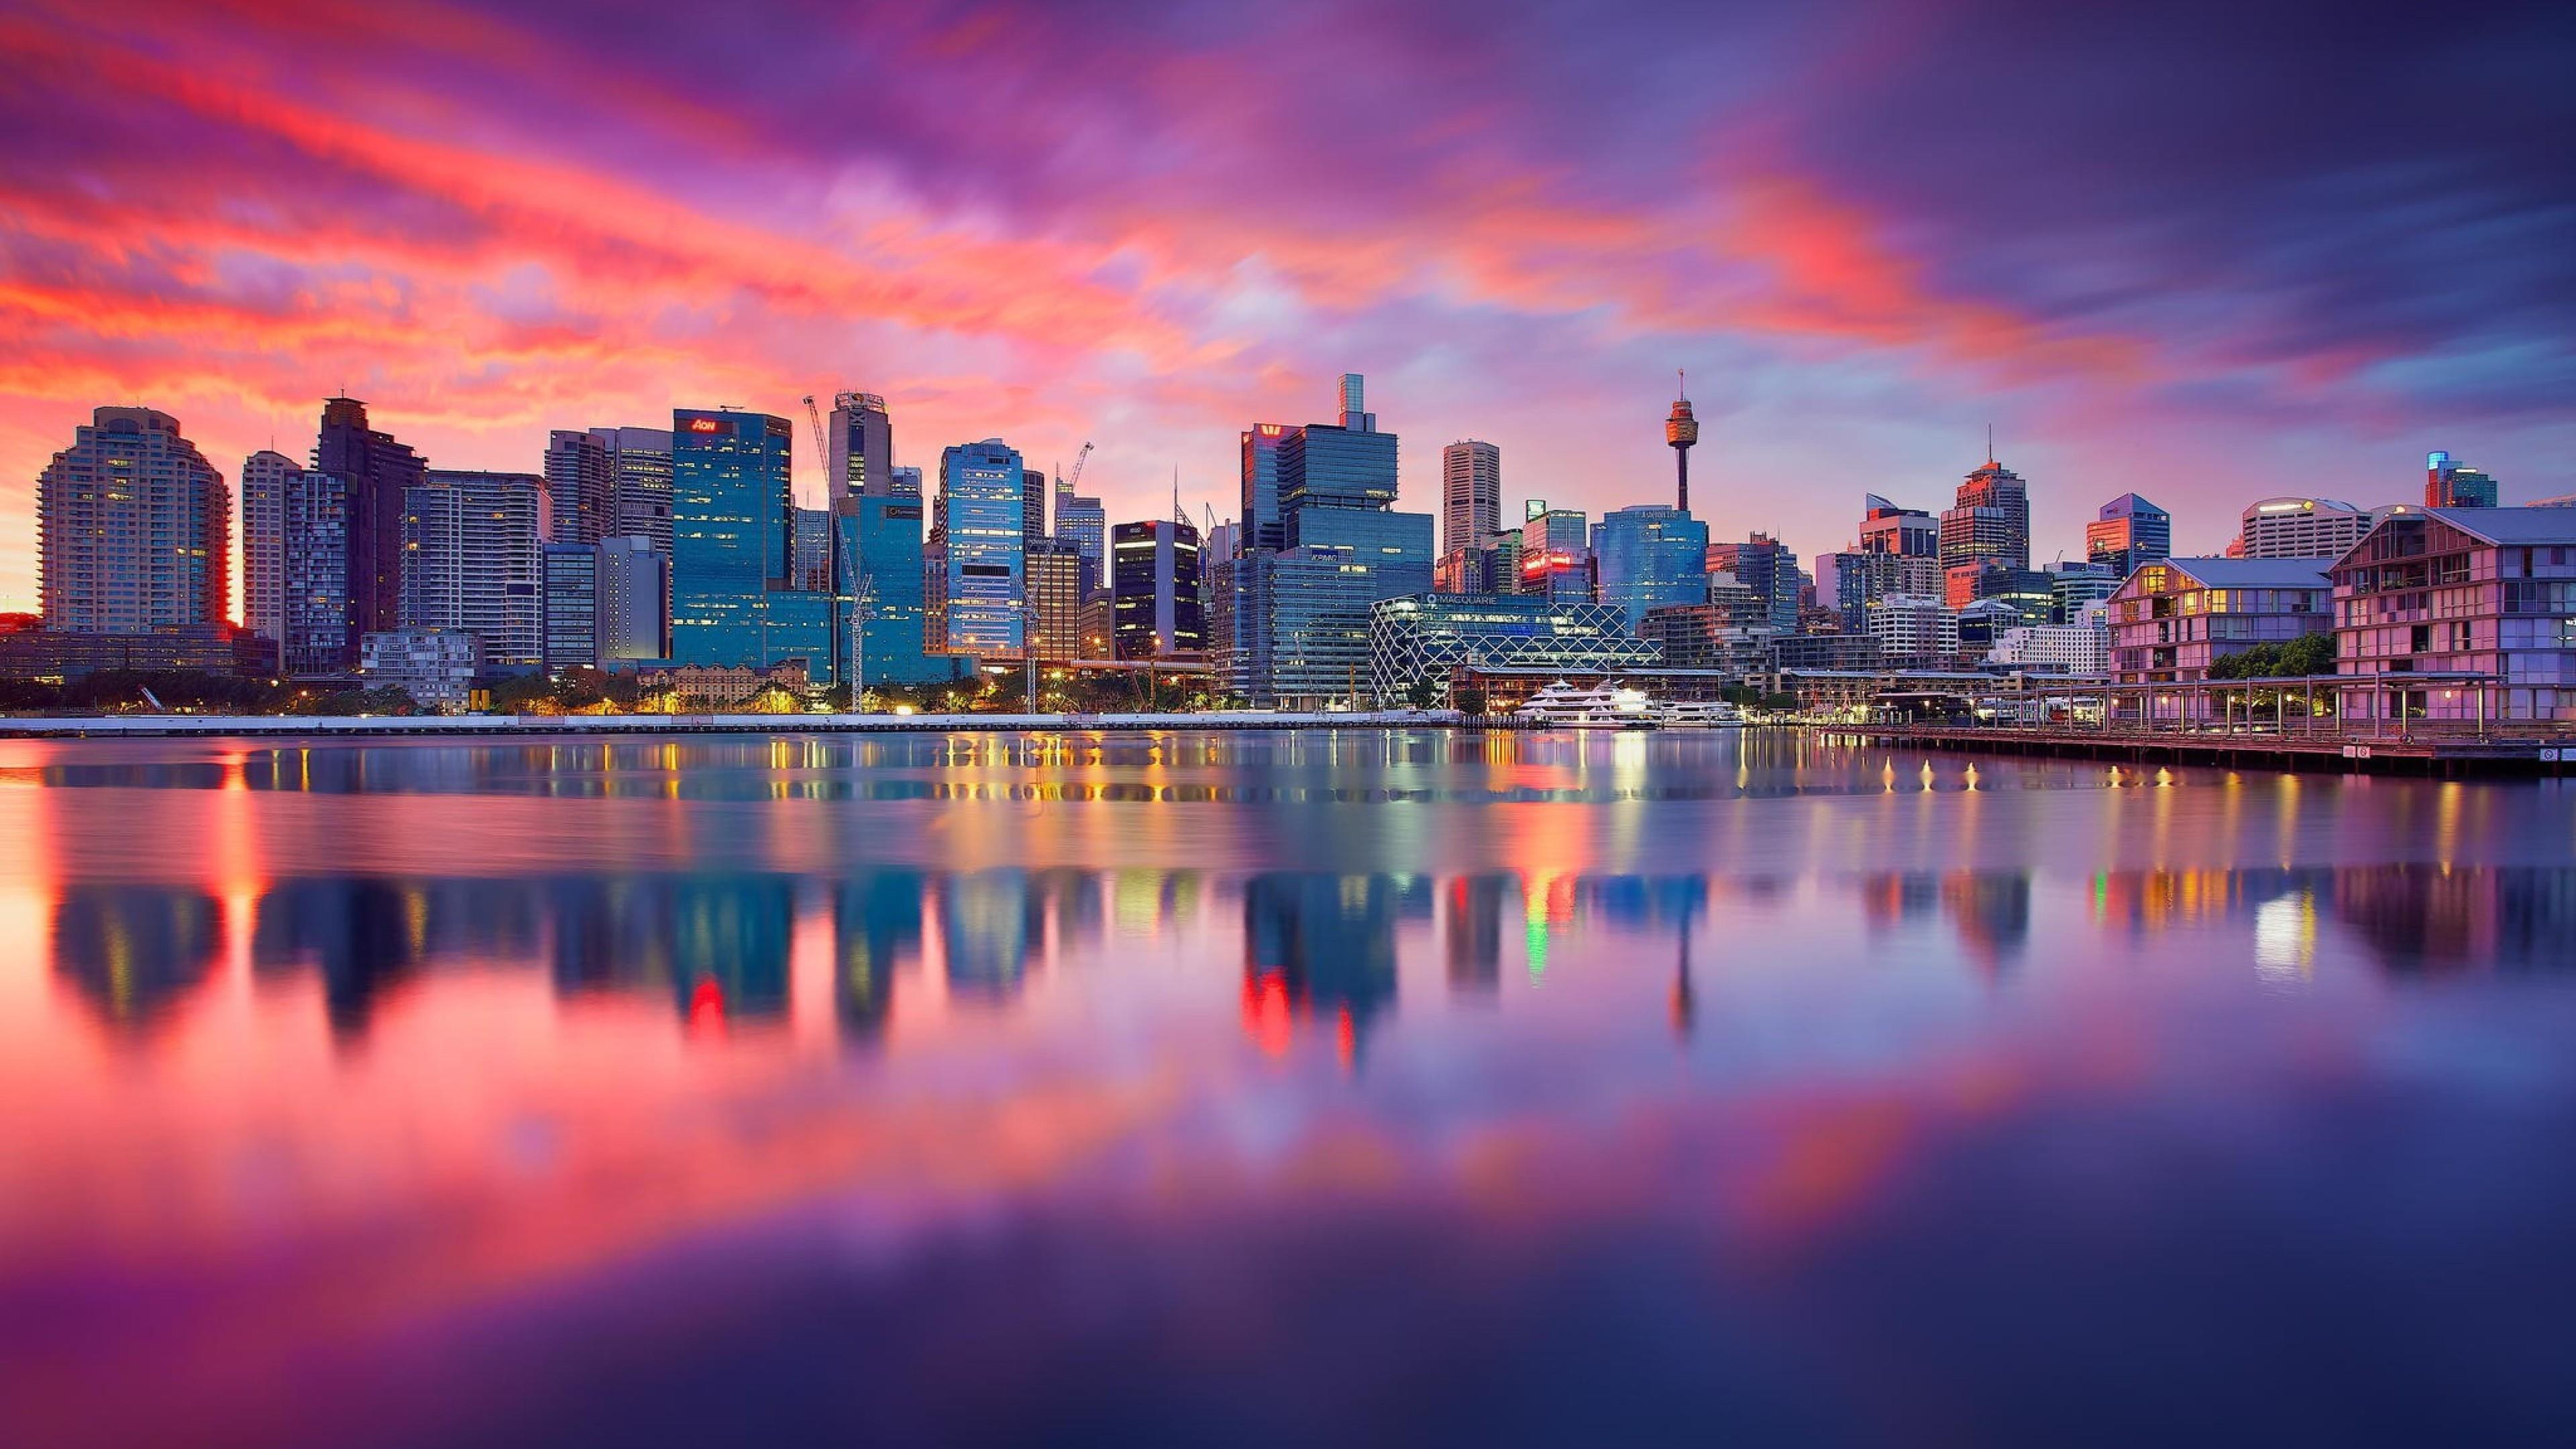 Sydney Skyline At Dusk 4K UltraHD Wallpaper. Wallpaper Studio 10